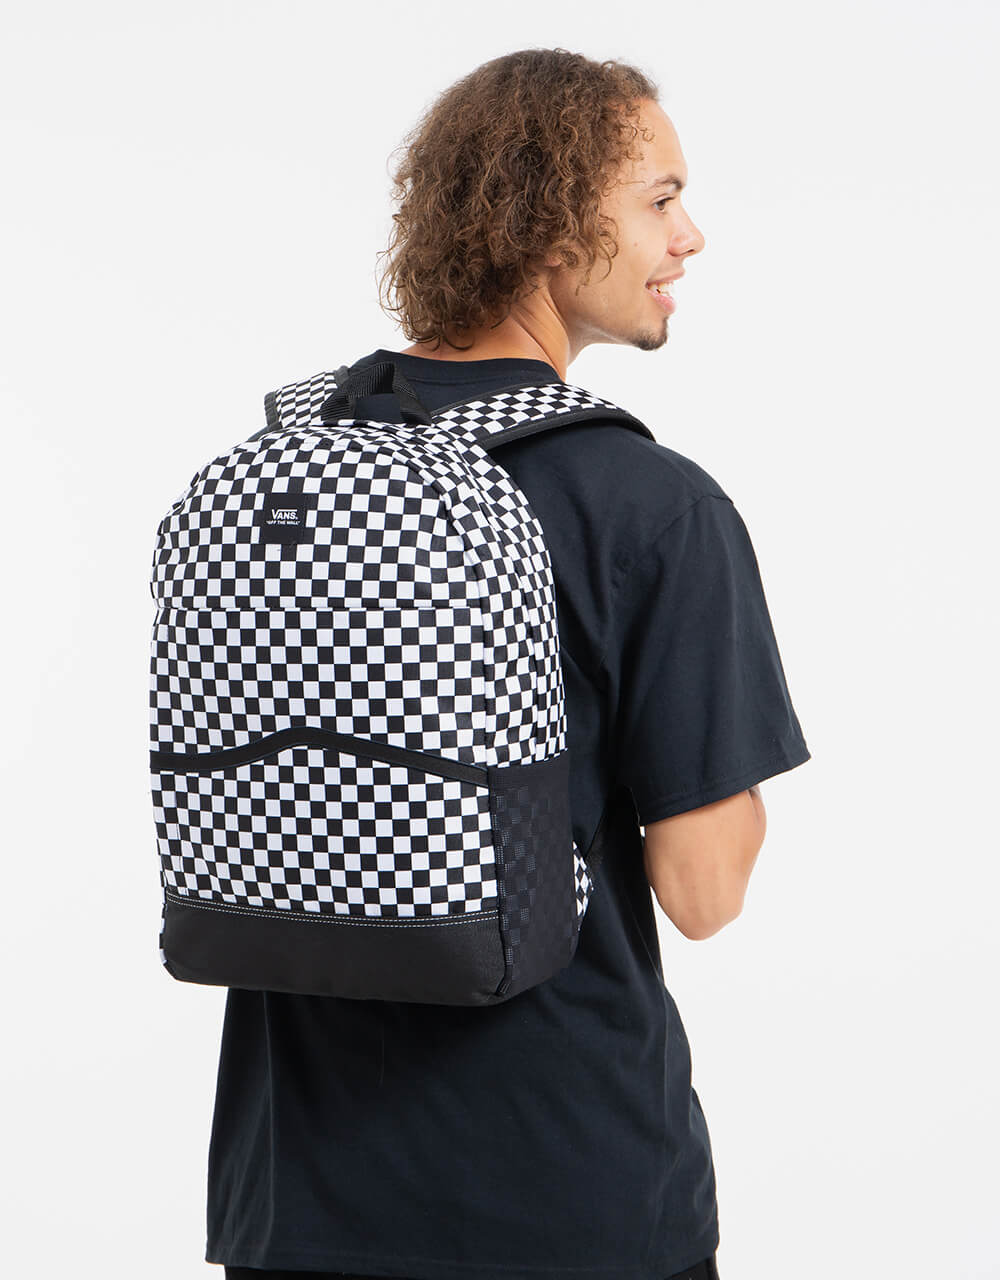 Vans Construct Skool Backpack - Black/White Check